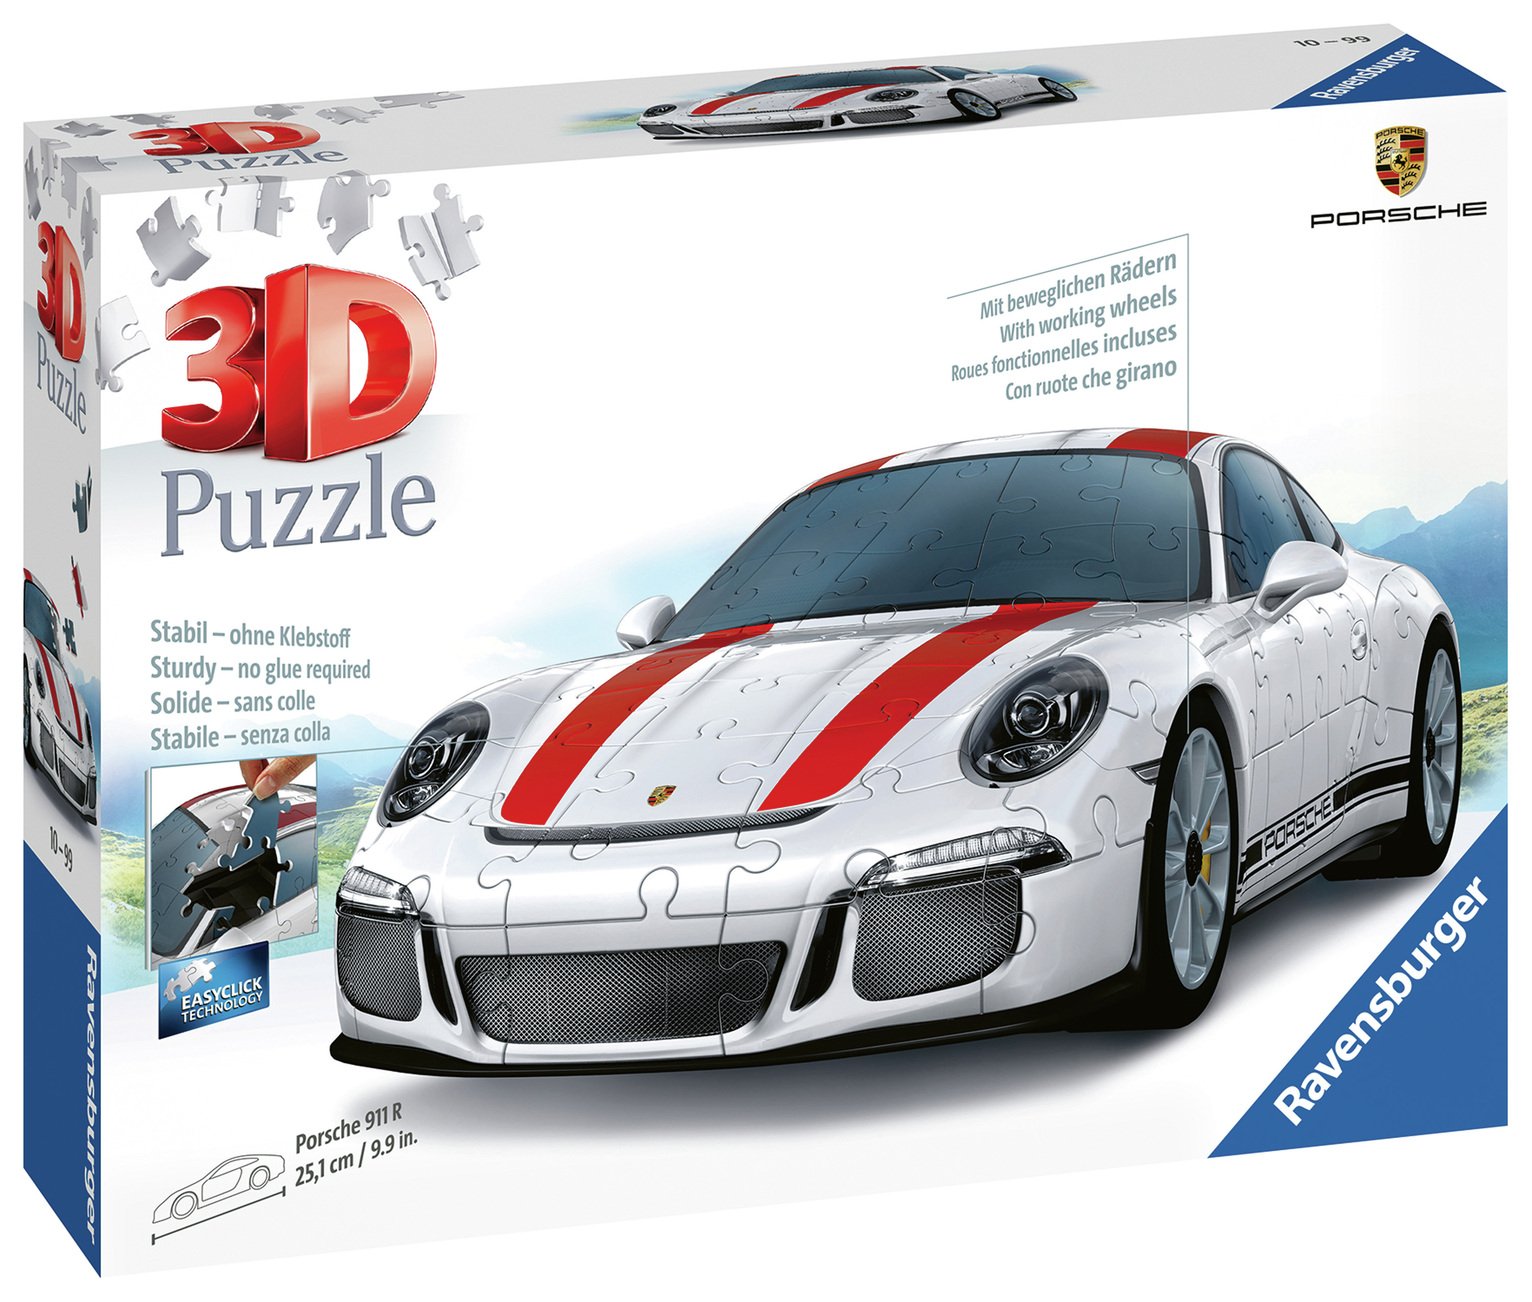 Porsche 3D Jigsaw Puzzle Review